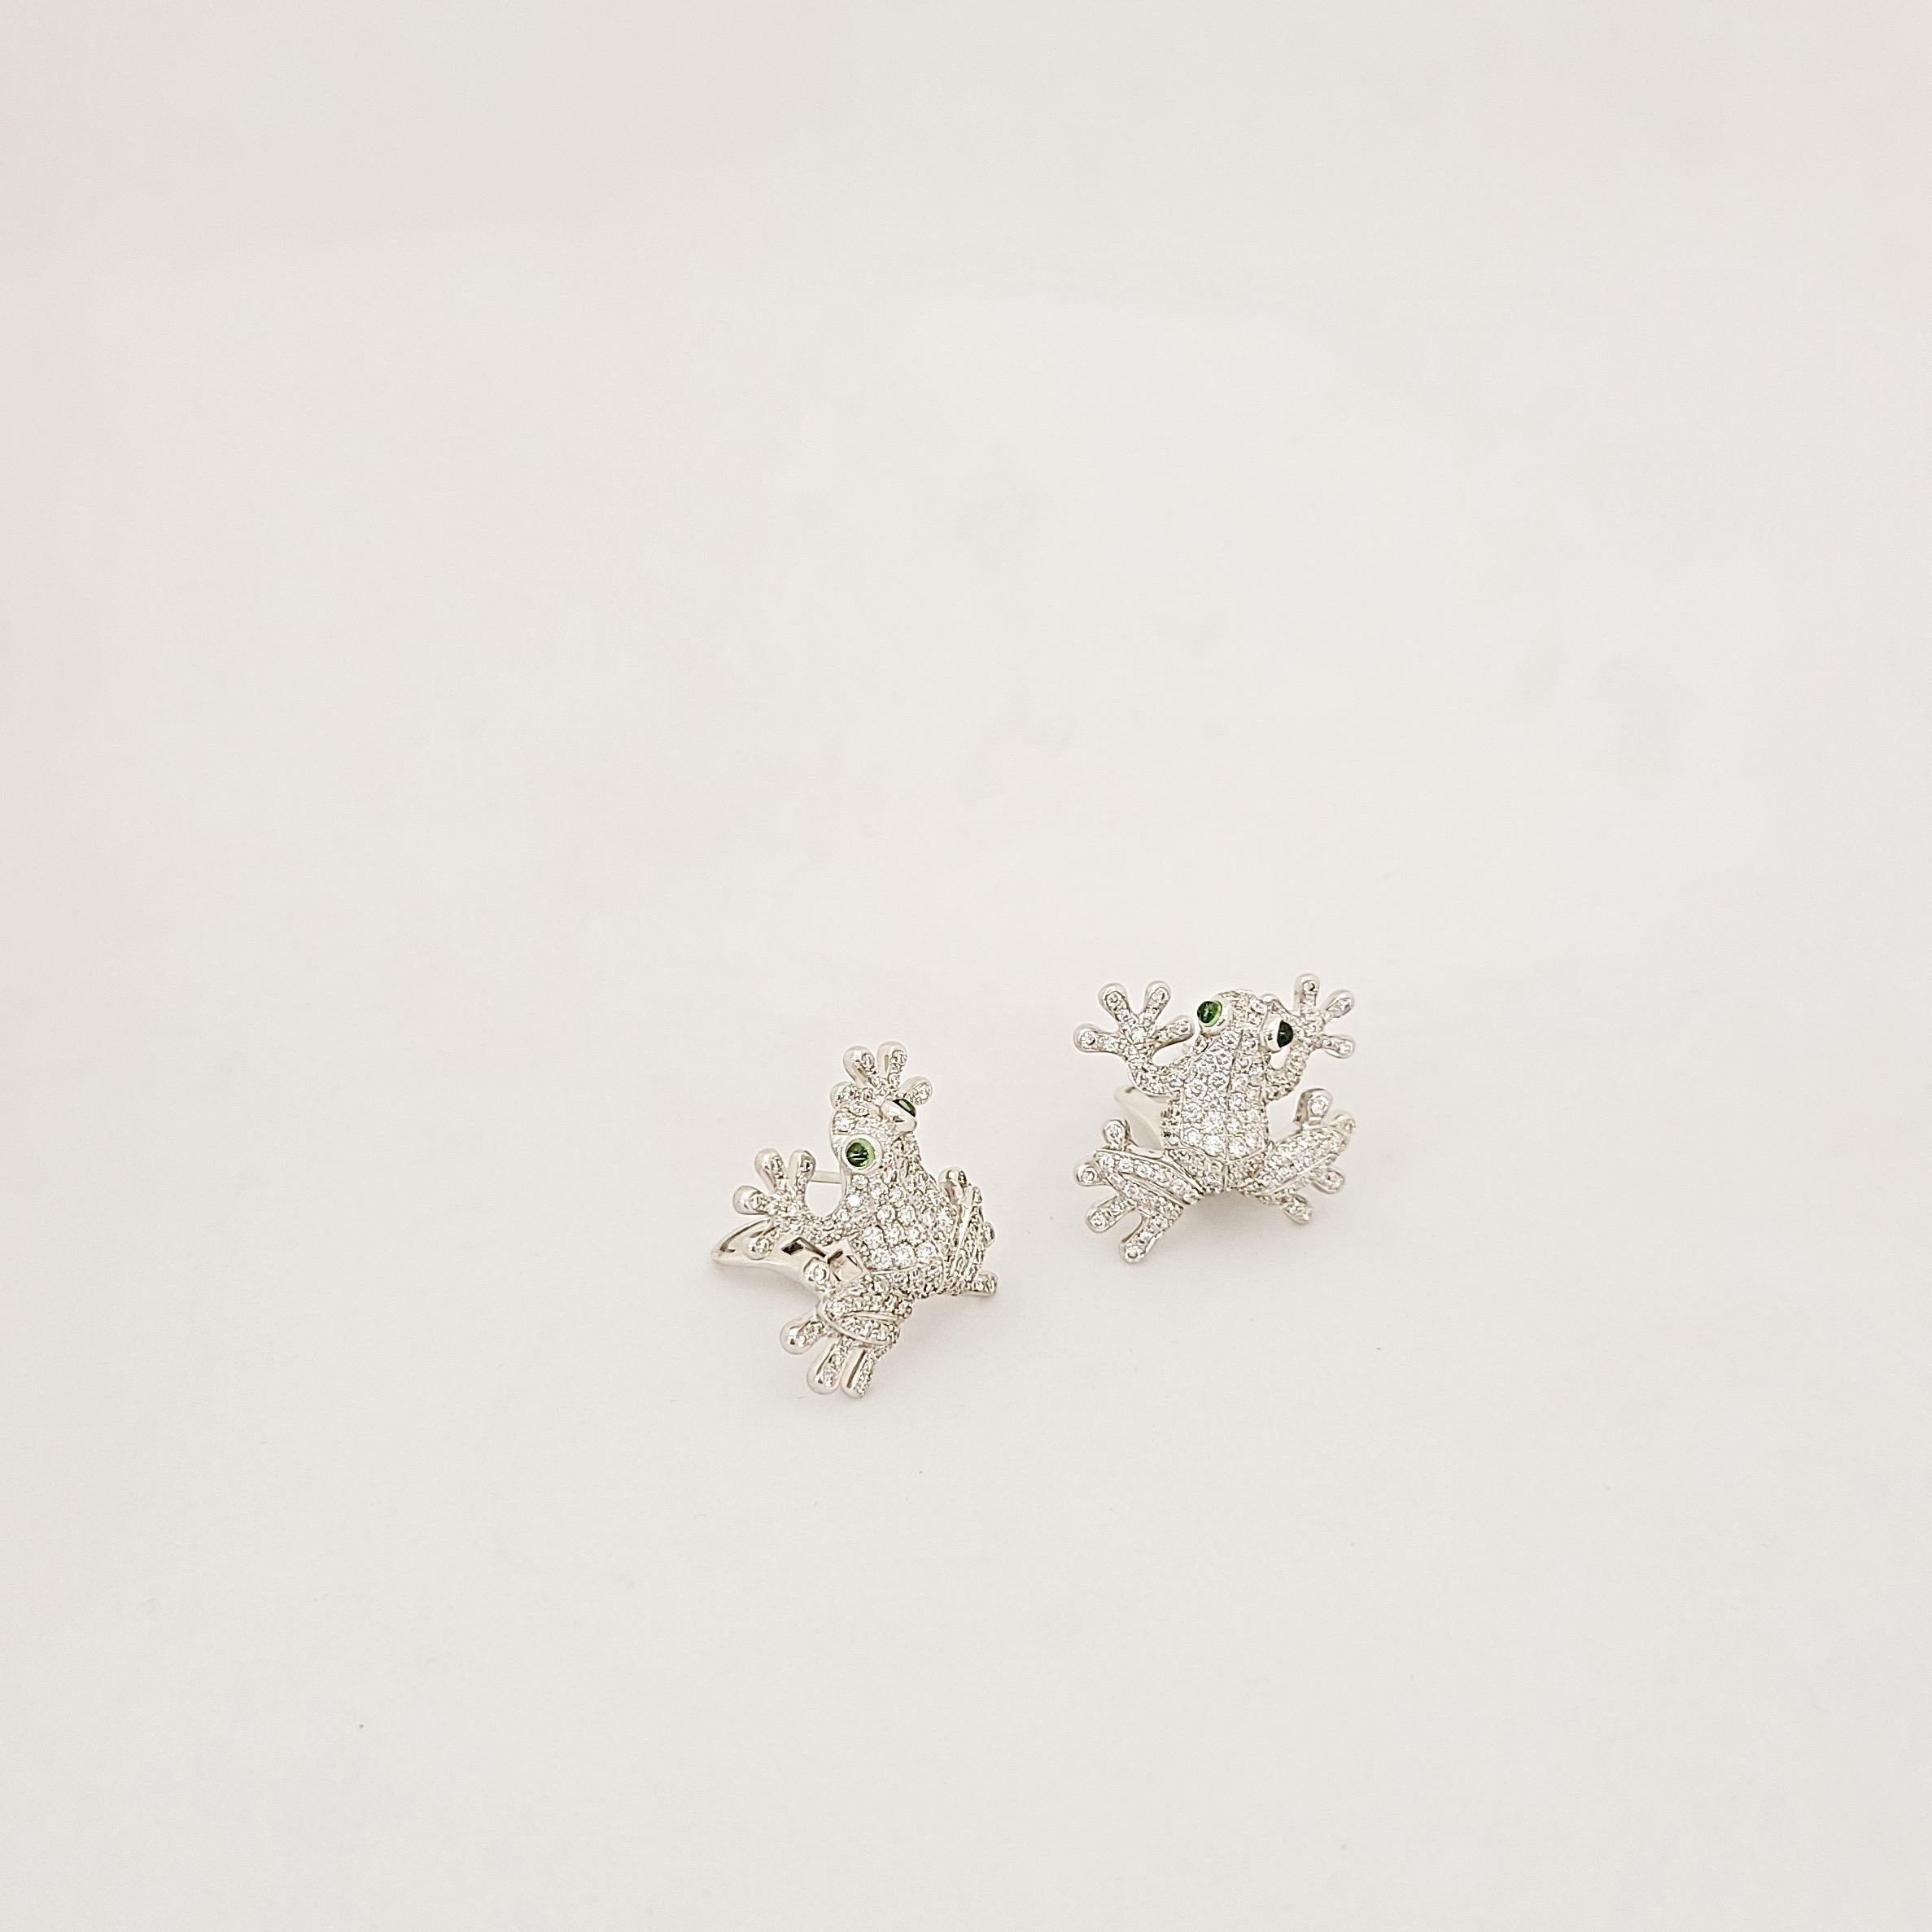 Les boucles d'oreilles grenouille de Stenzhorn pour Cellini Jewelers NYC sont serties de 2,30 carats de diamants et accentuées de 0,40 carats. Tsavorites cabochon pour les yeux. 
Les mesures sont d'environ 0,88